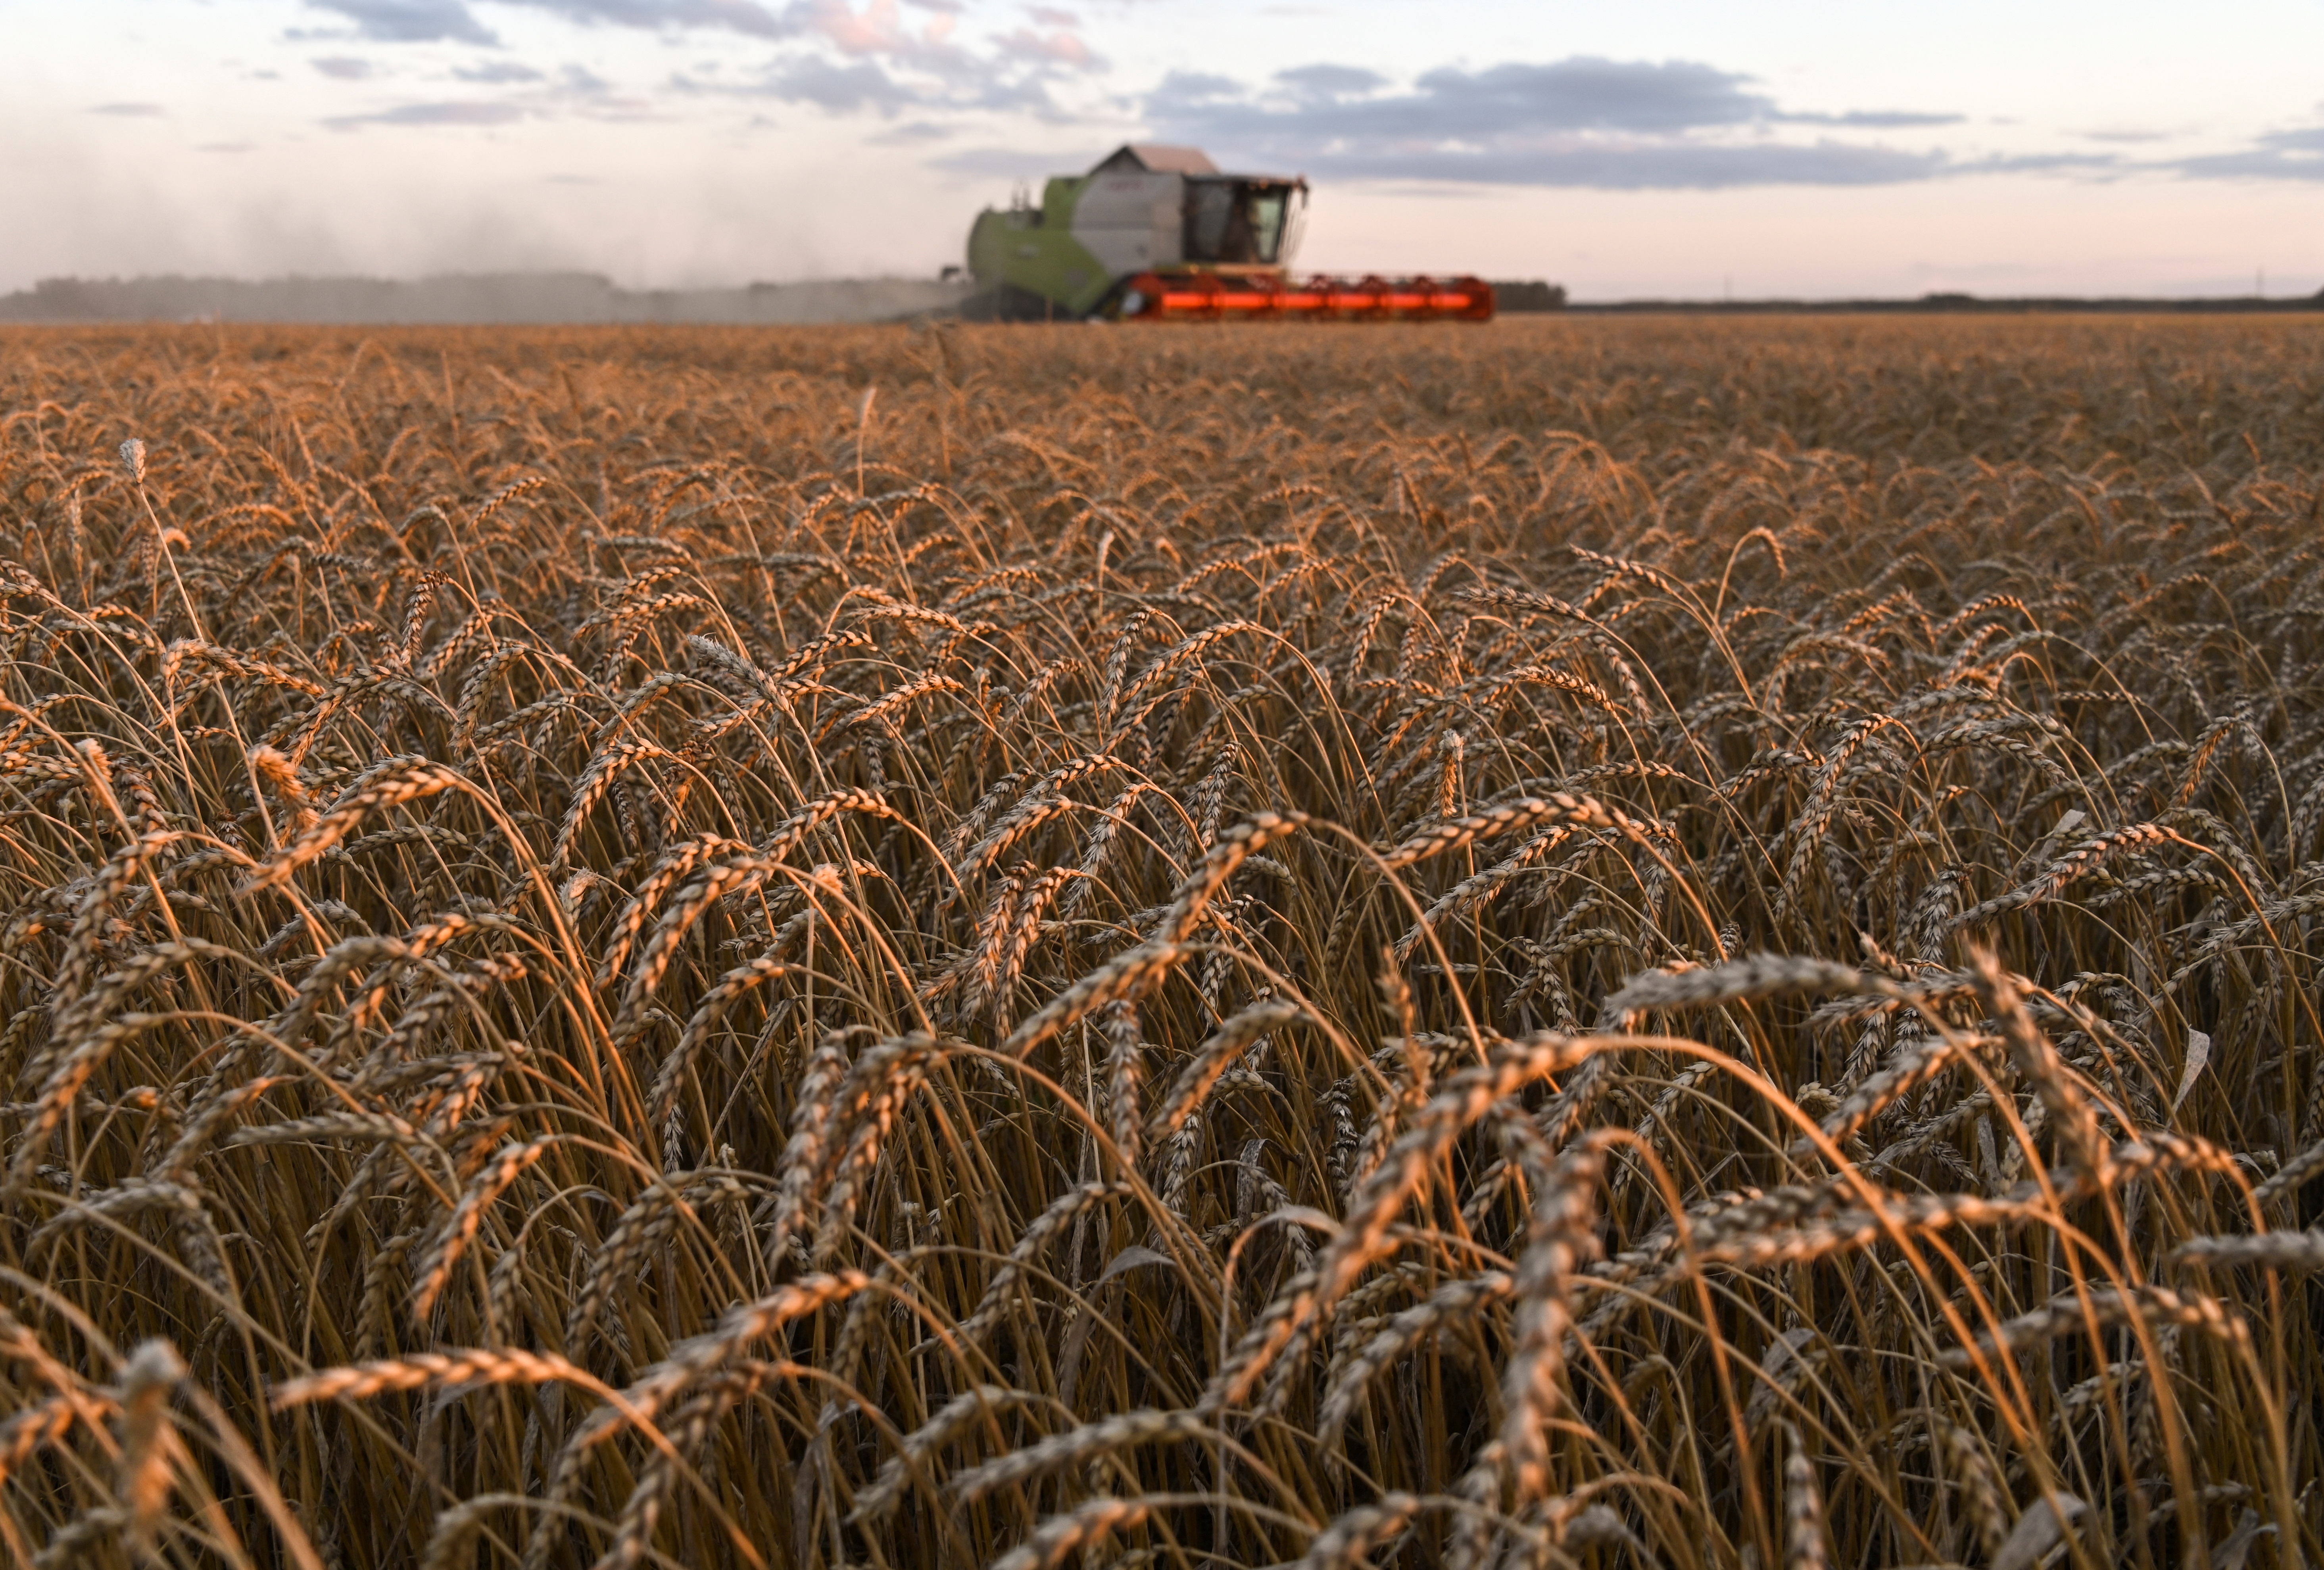 La falta de insumos importados podría impactar en la producción agrícola rusa, según un informe que circuló en el Kremlin. En esta foto de archivo puede verse un campo en la región de Omsk, Rusia en septiembre de 2020 (Reuters)